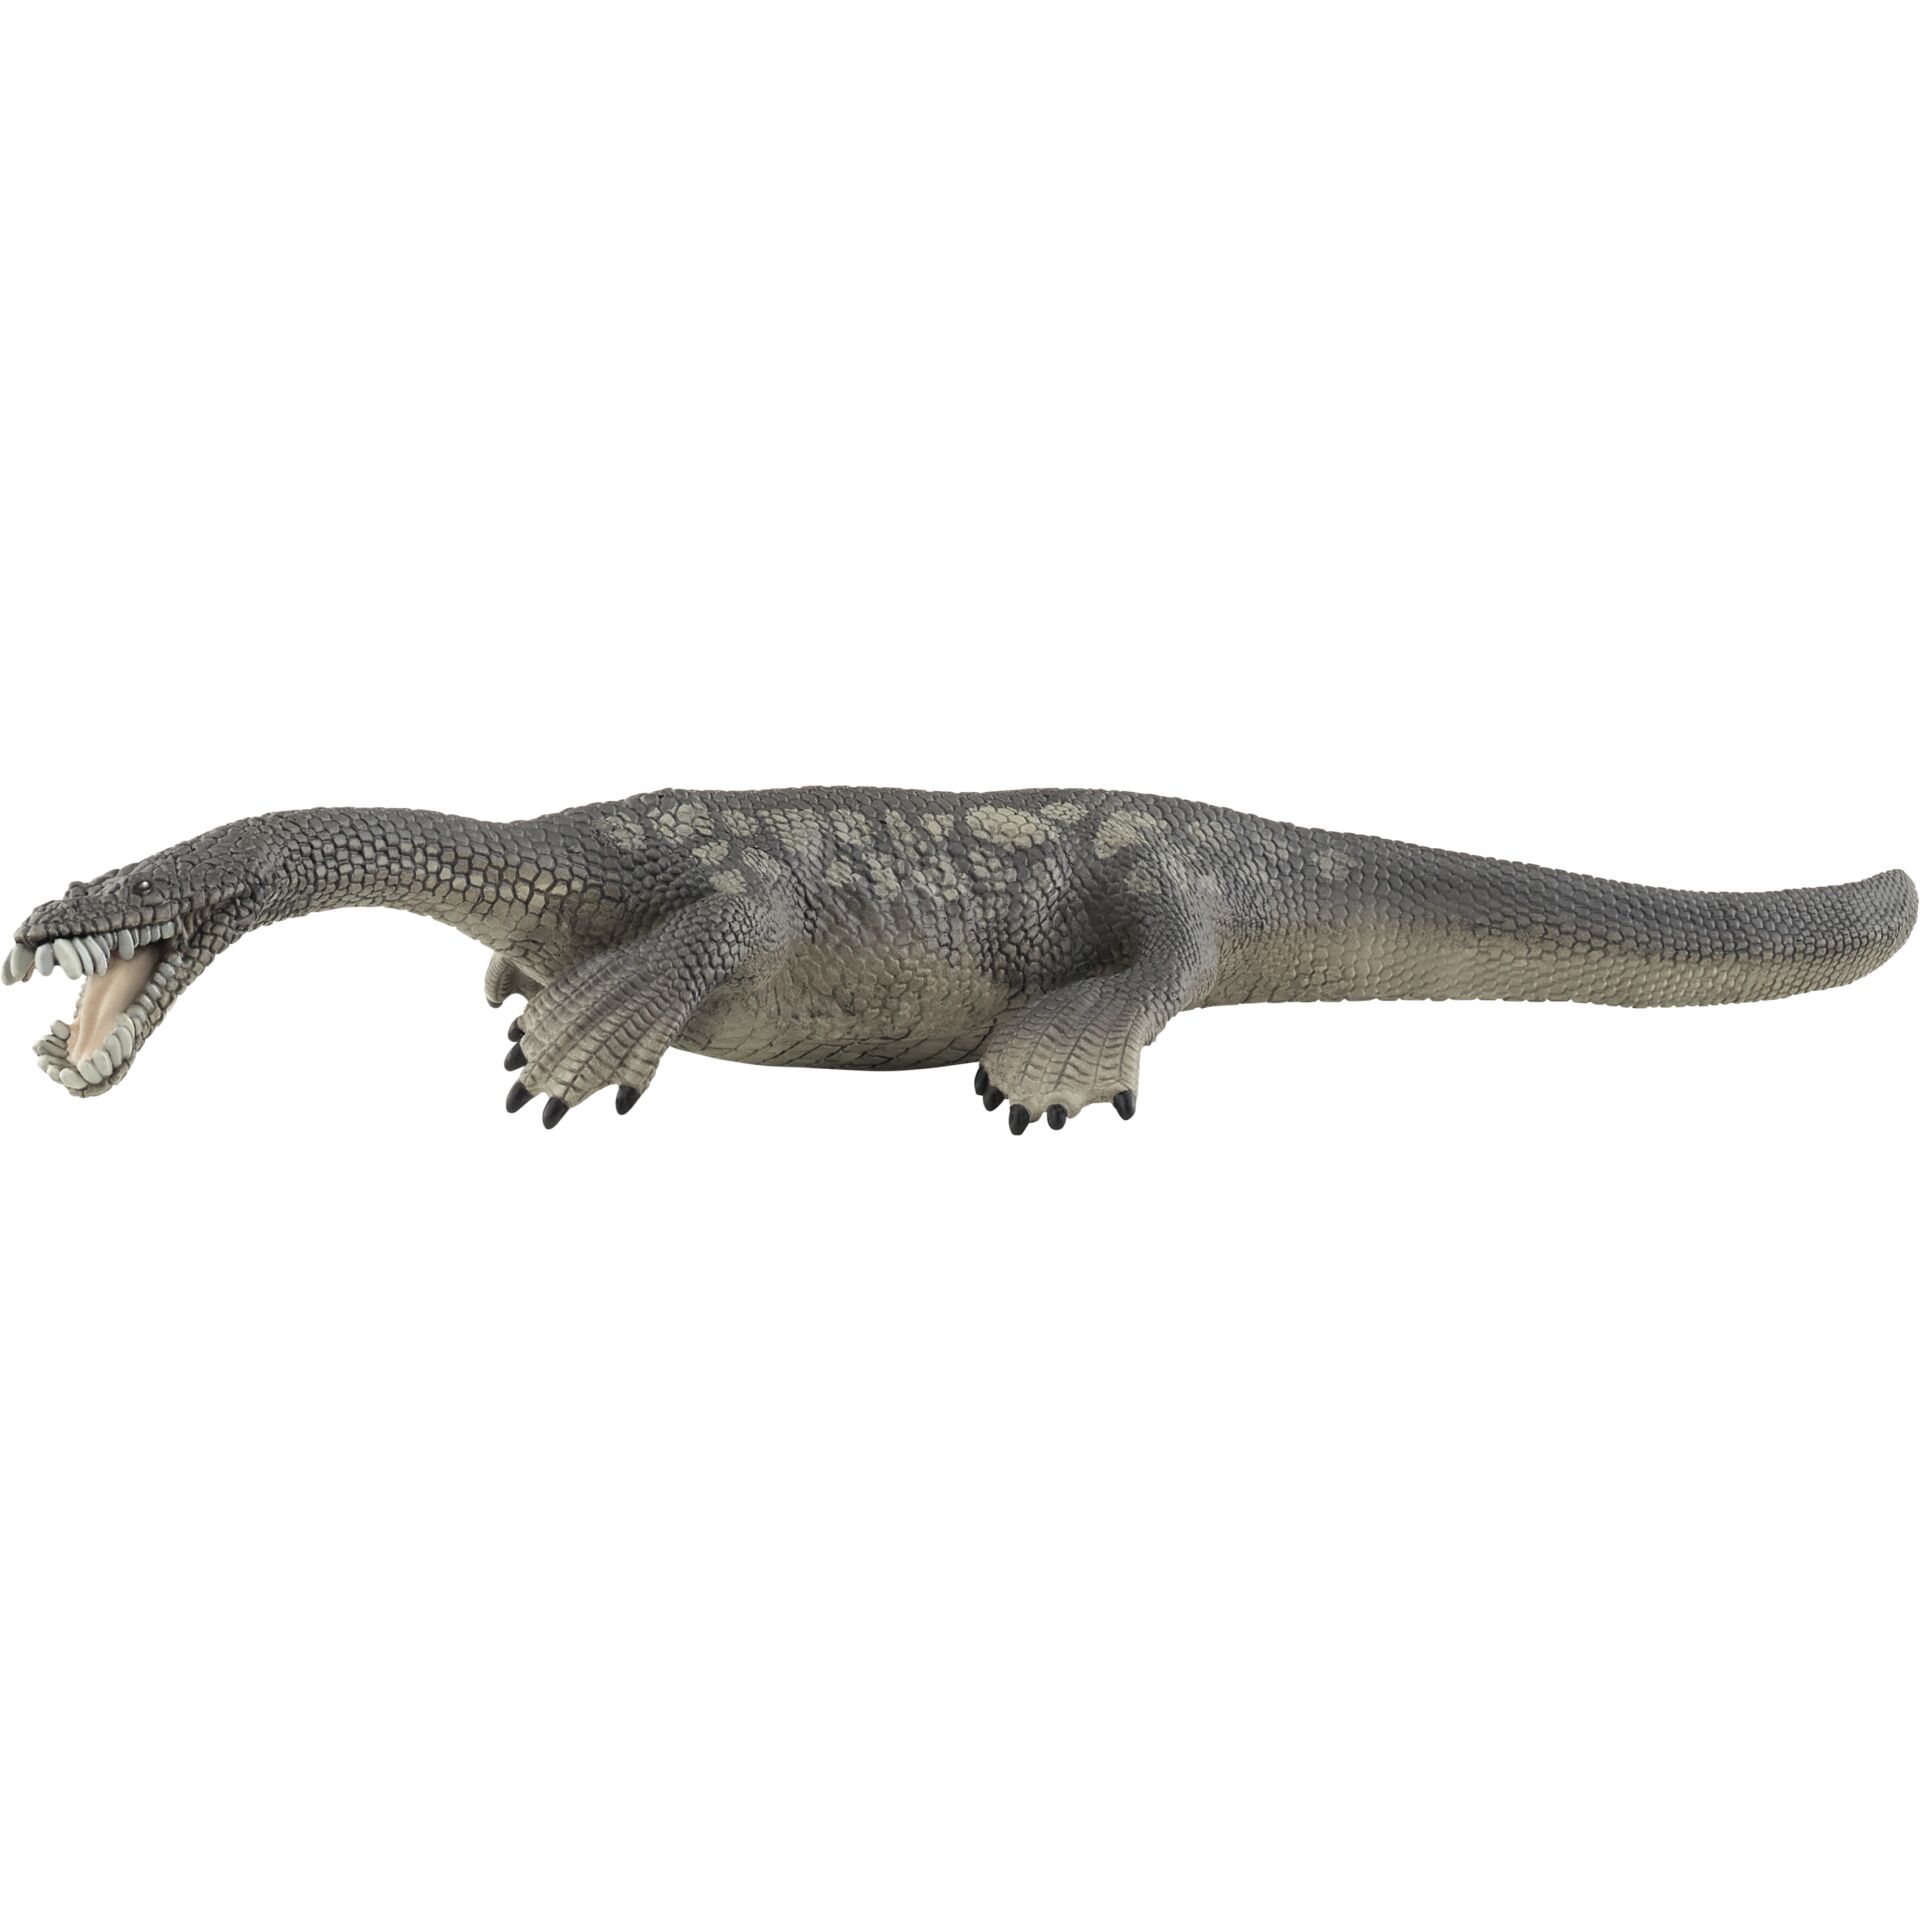 Schleich Dinosaurs         15031 Nothosaurus